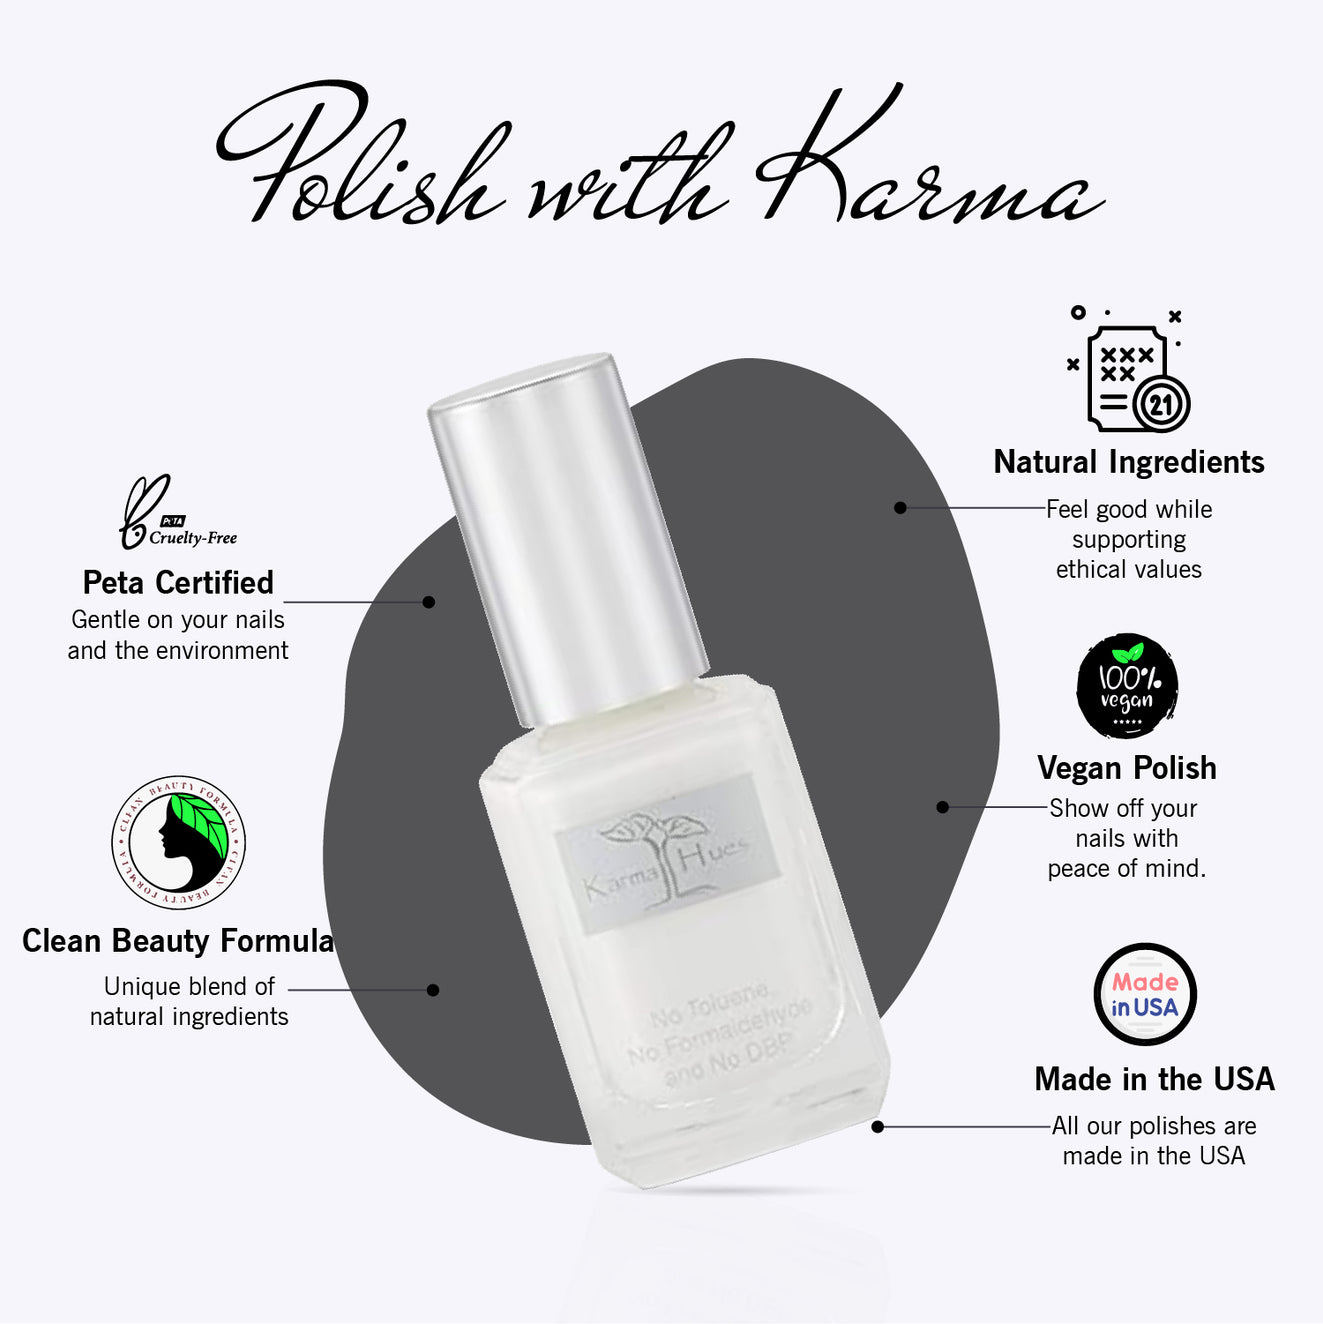 Karma Naturals Nail Polish - French White